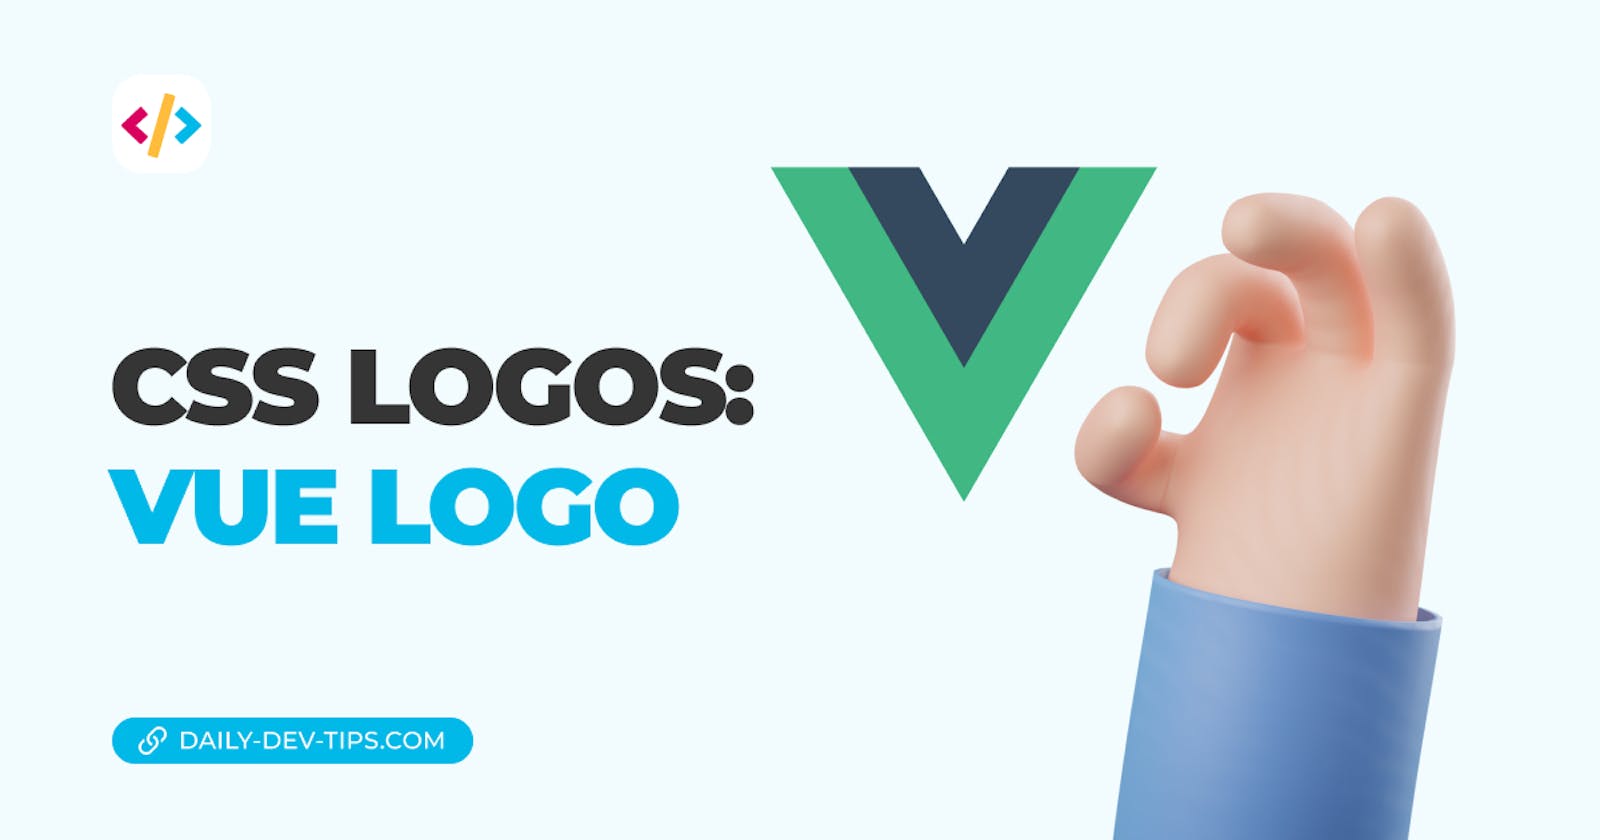 CSS Logos: Vue logo